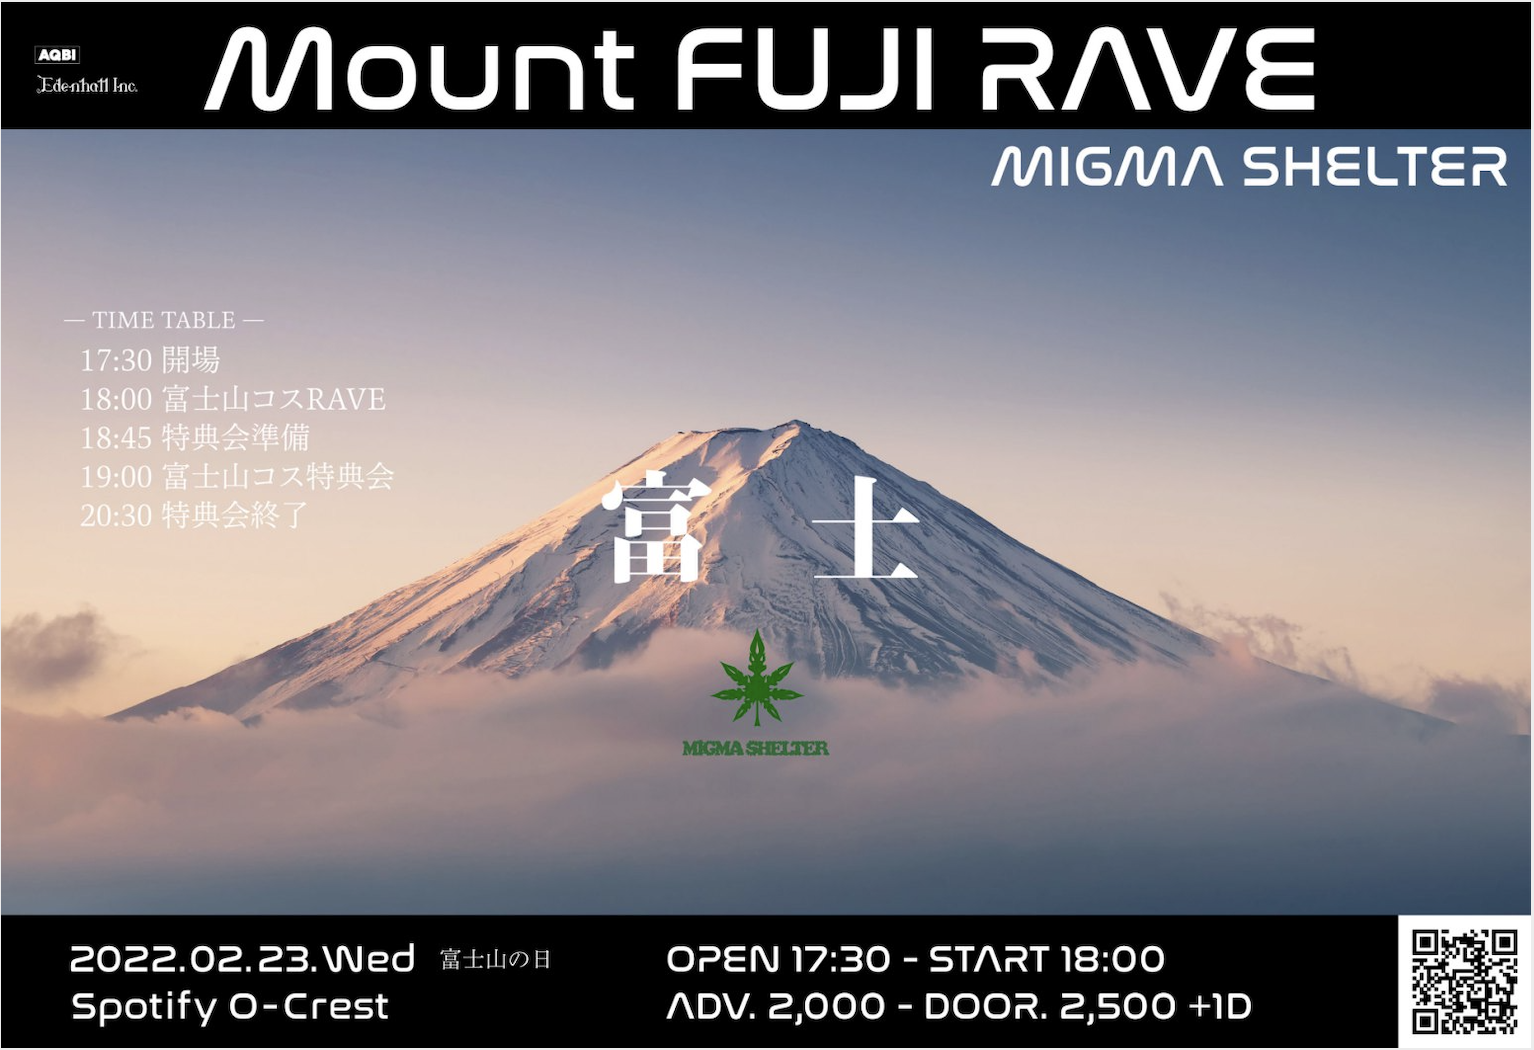 Mount FUJI RAVE